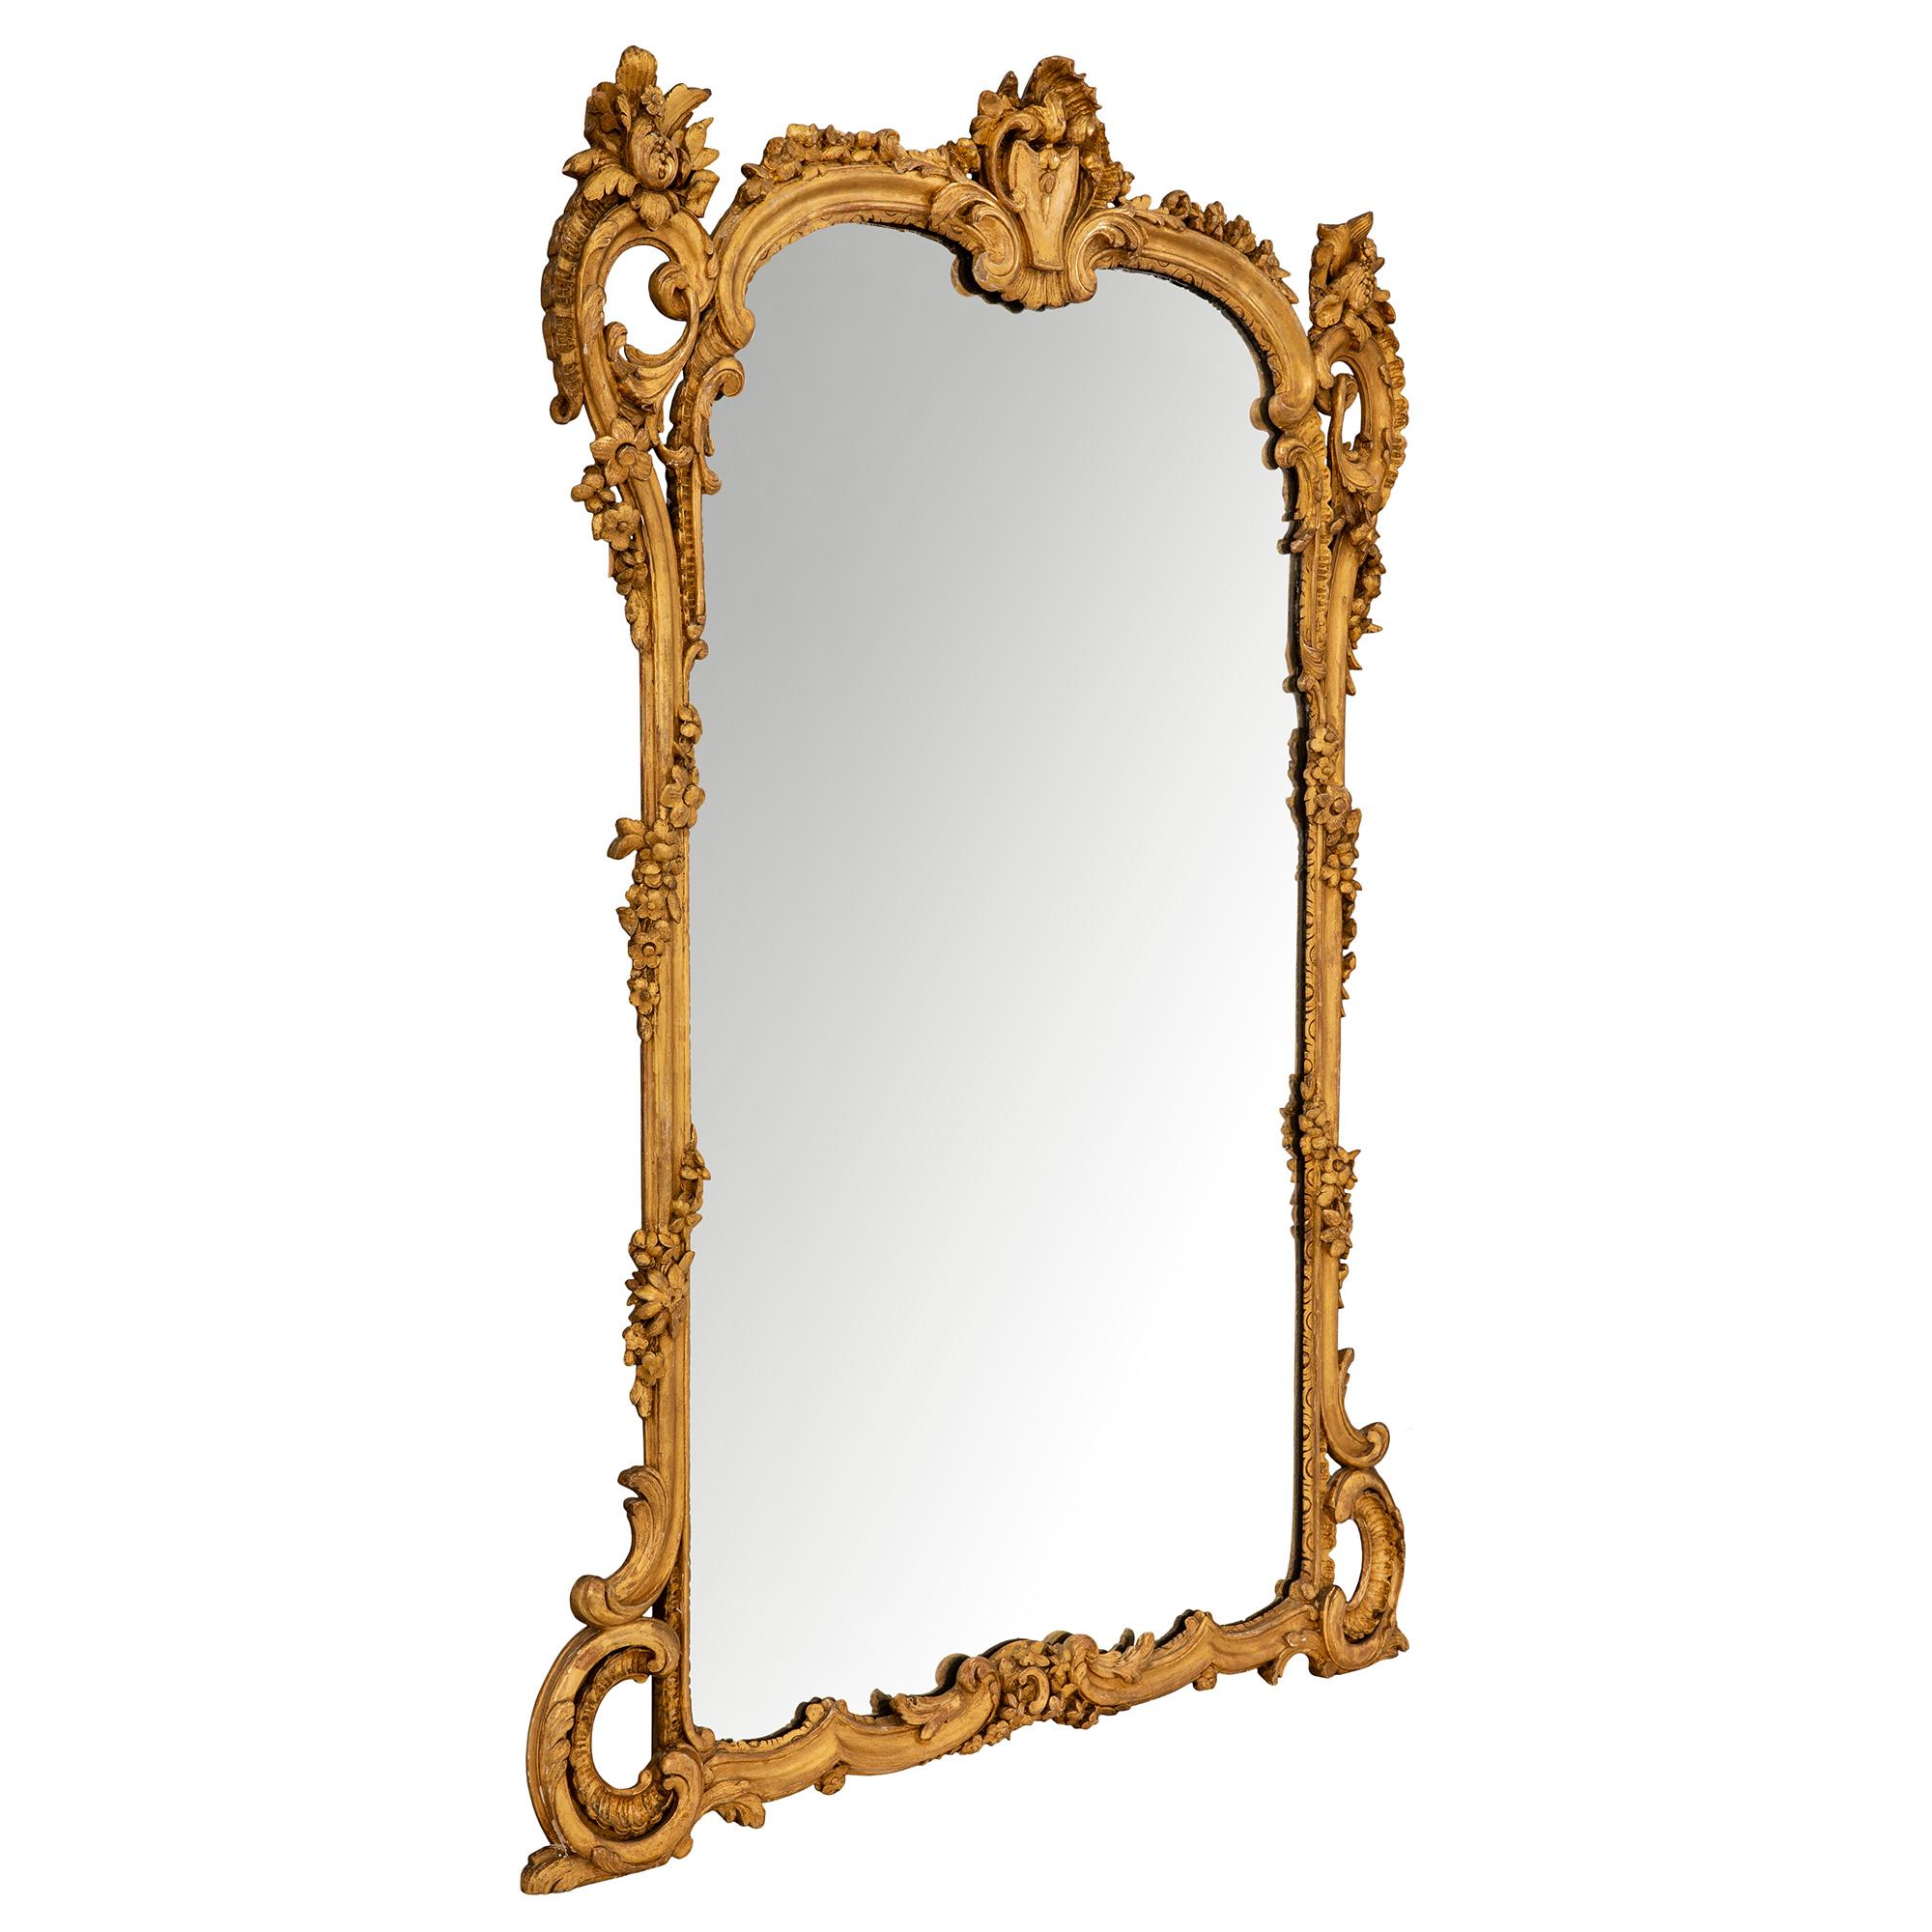 Un très élégant miroir français du 19ème siècle en bois doré de style Louis XV. La plaque de miroir originale est encadrée dans un beau cadre chiné. À la base, on trouve de jolis motifs à volutes avec de saisissantes volutes sculptées en roseau de